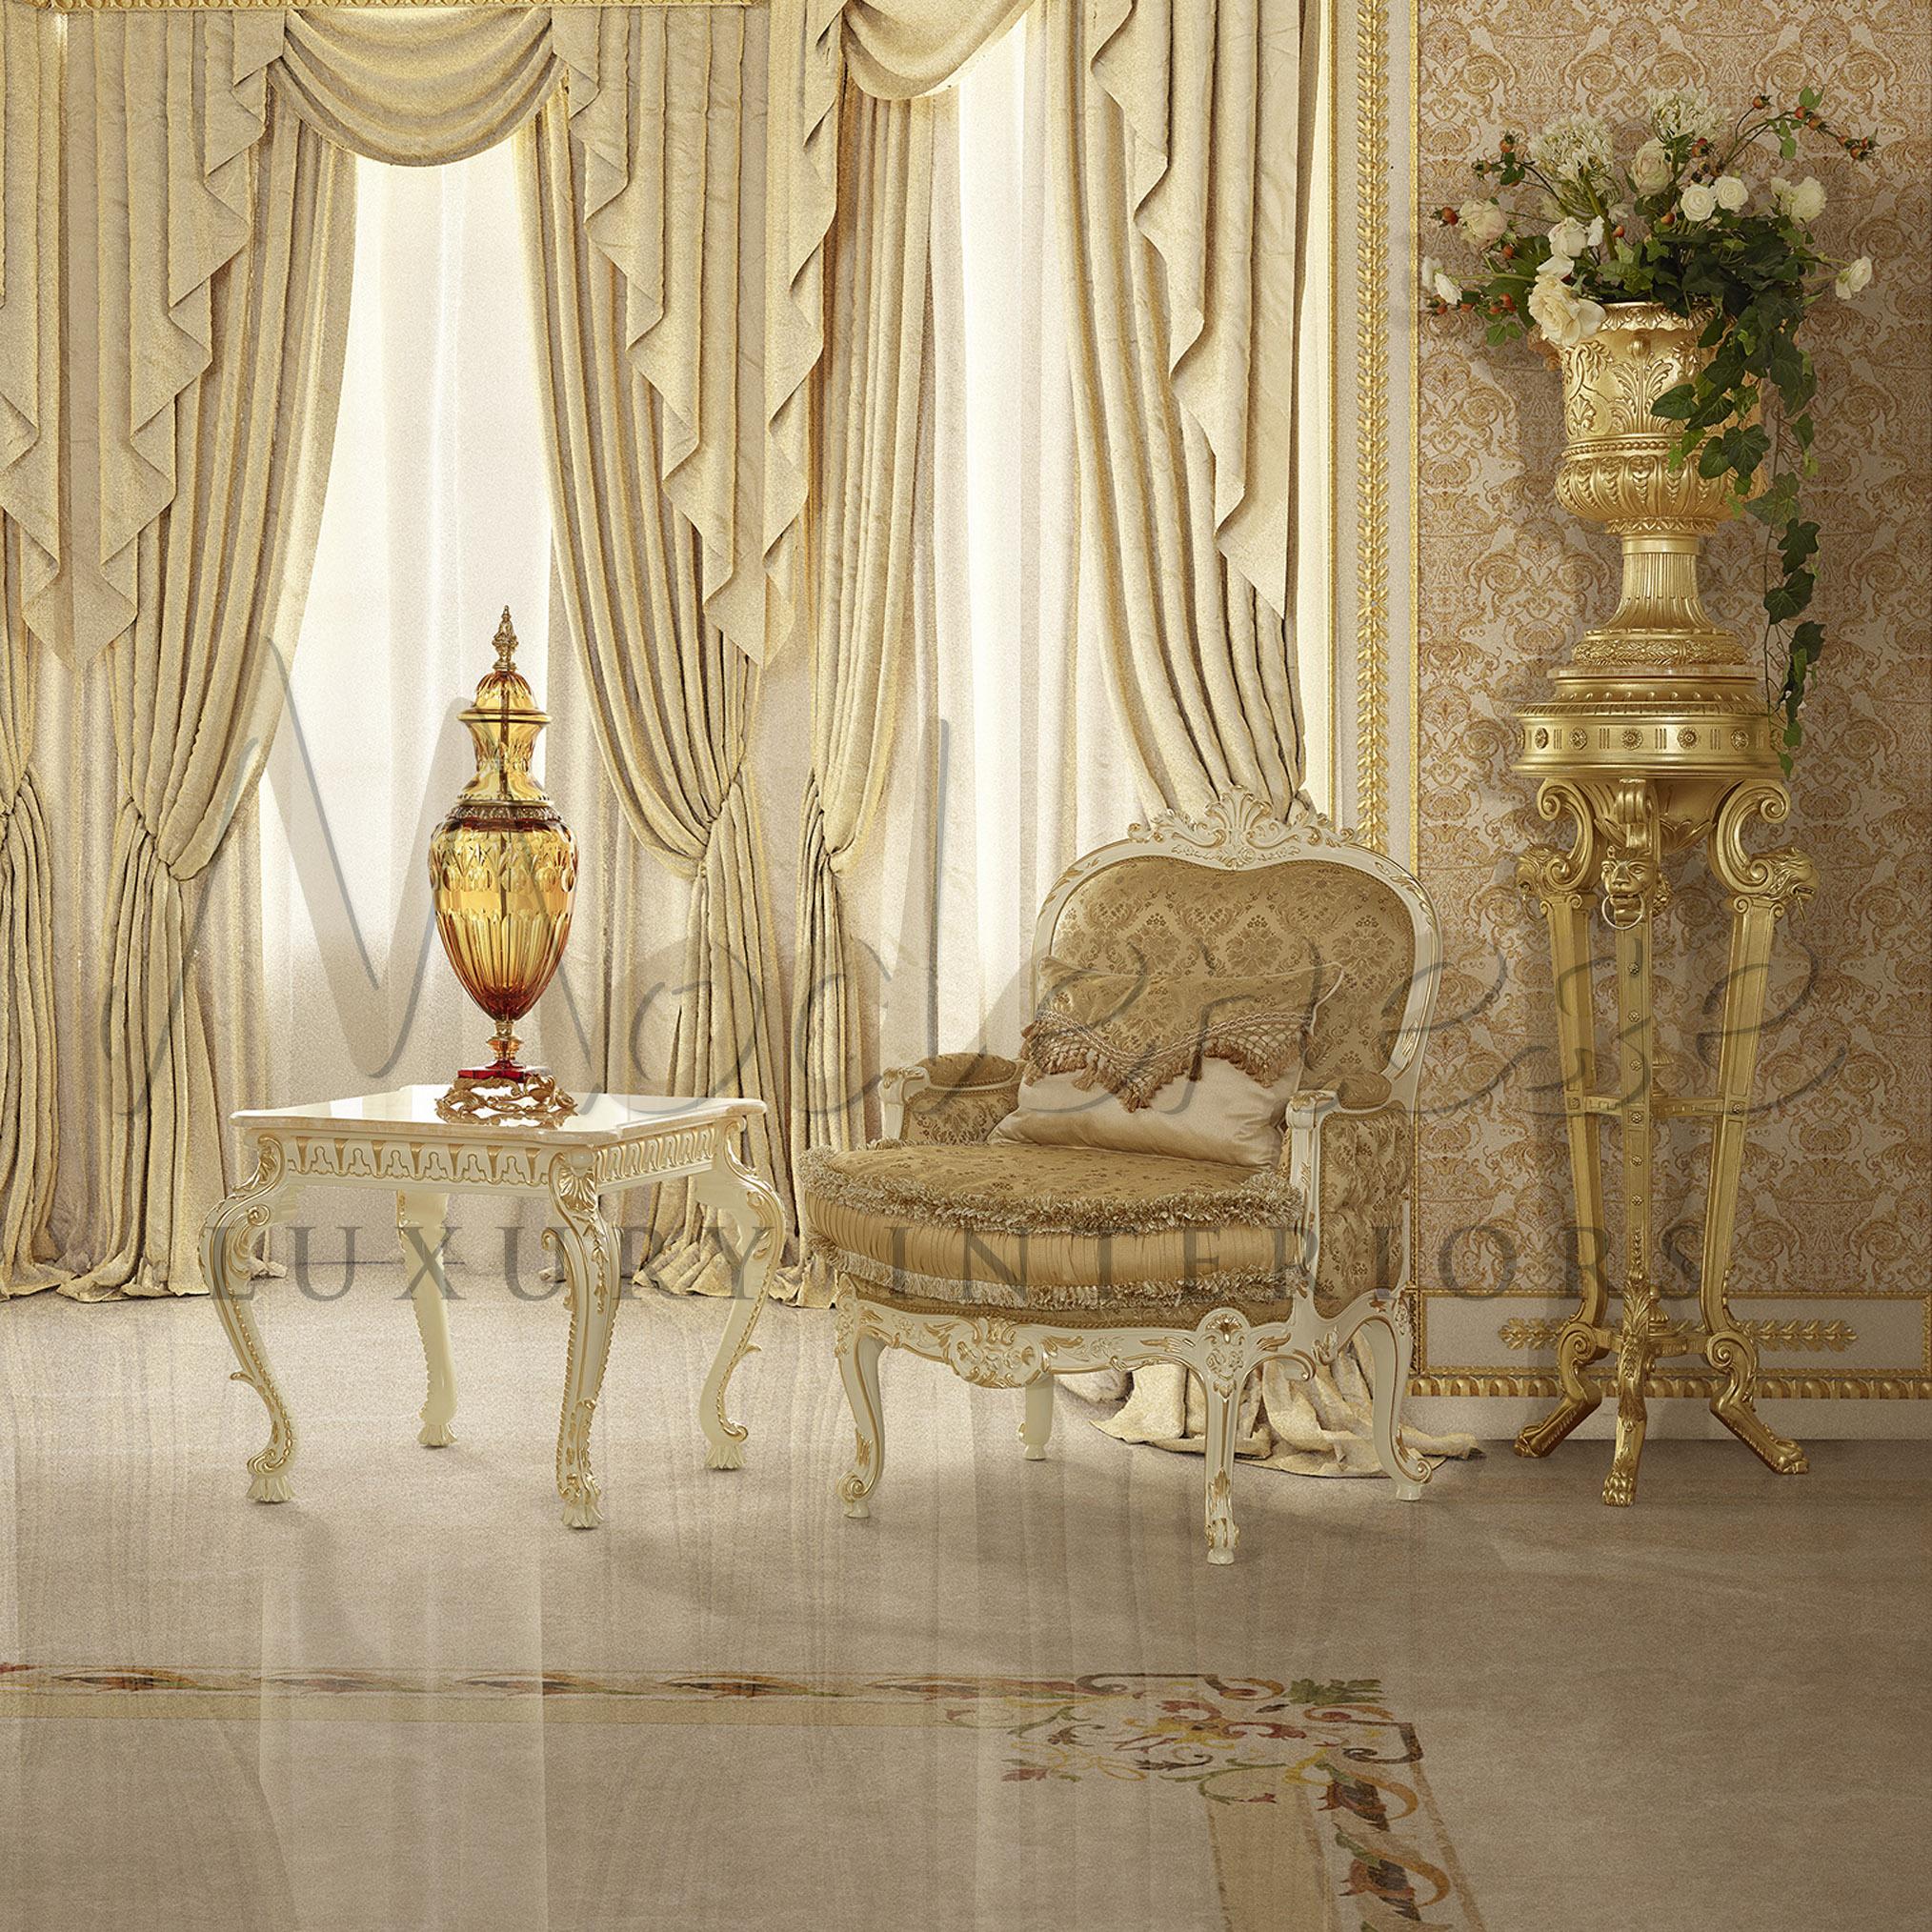 Merveilleux fauteuil en satin beige crème avec boutons capitons et coussin brosse. Ce siège présente une structure en bois décorée d'une finition laquée ivoire et feuille d'or. Modenese Gastone représente les solutions appropriées lorsque vous êtes